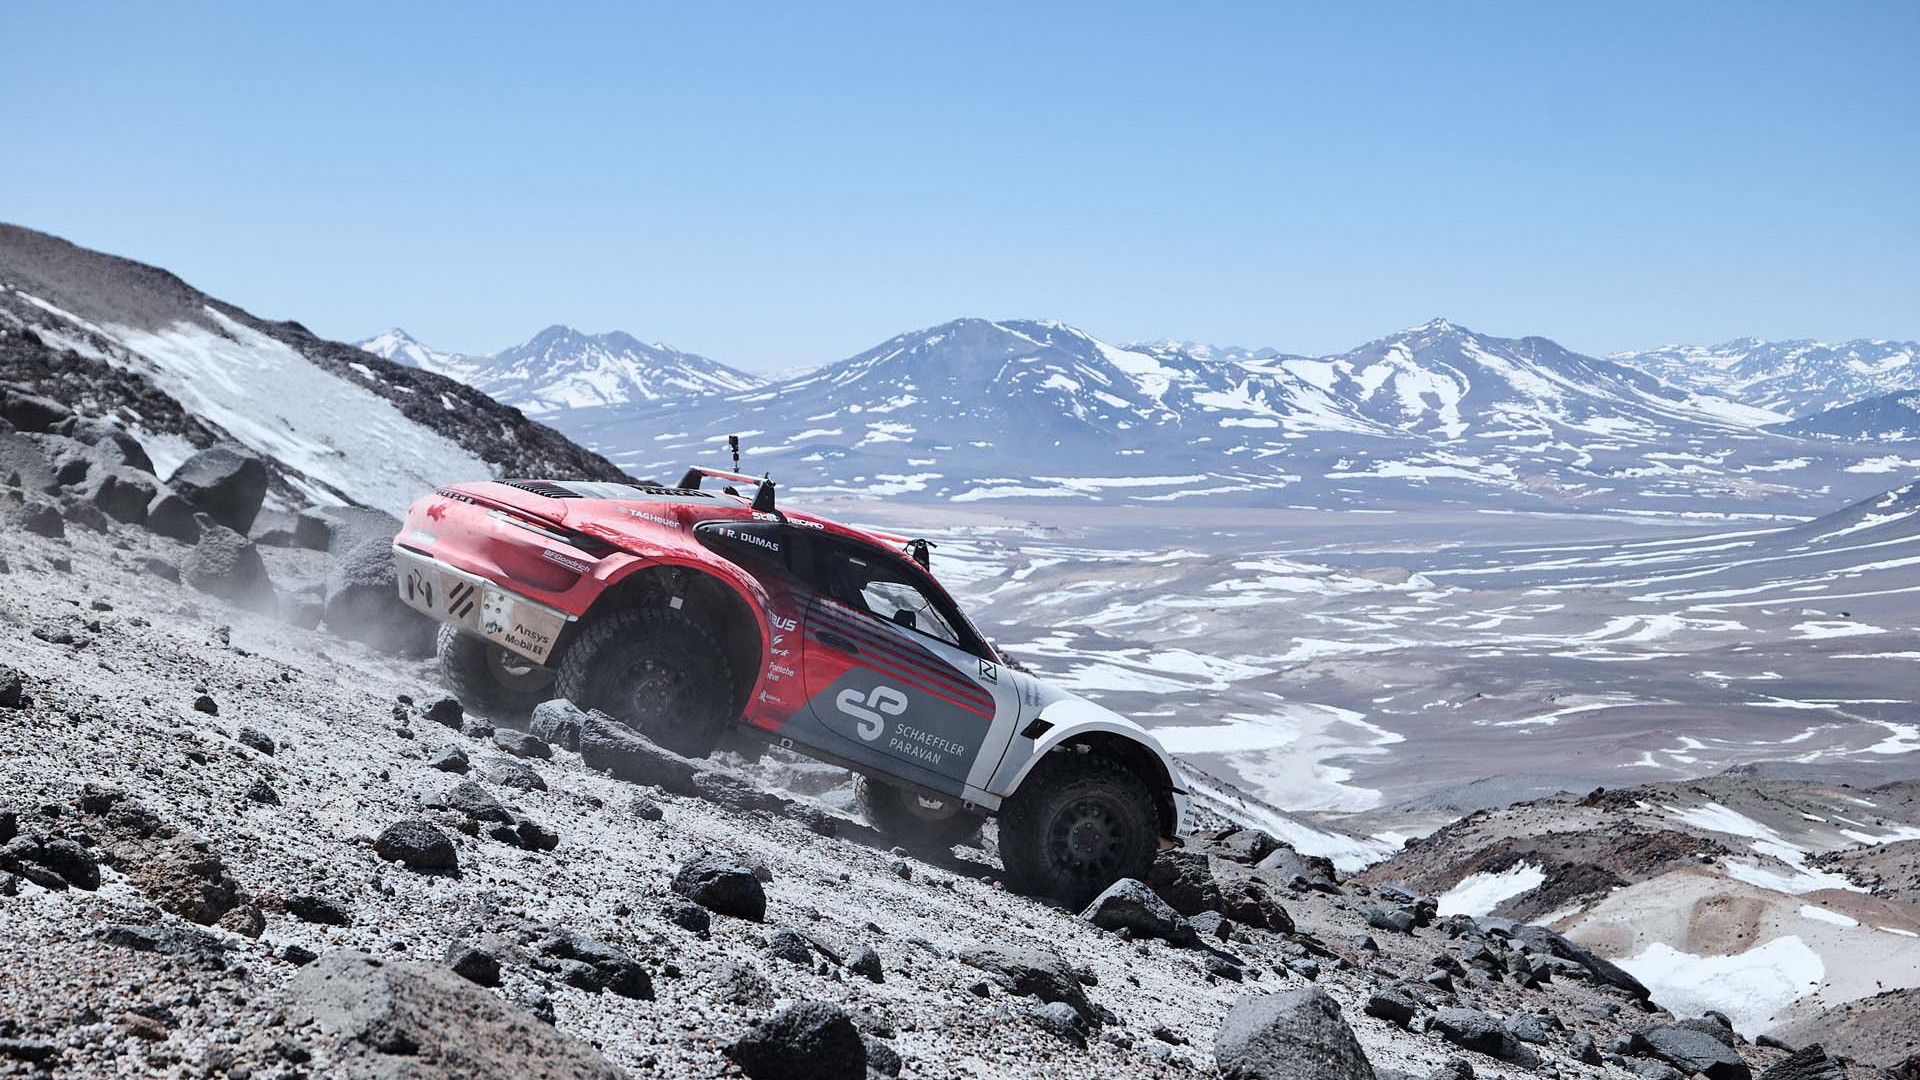 Rugged Porsche 911 duo climb world's tallest volcano